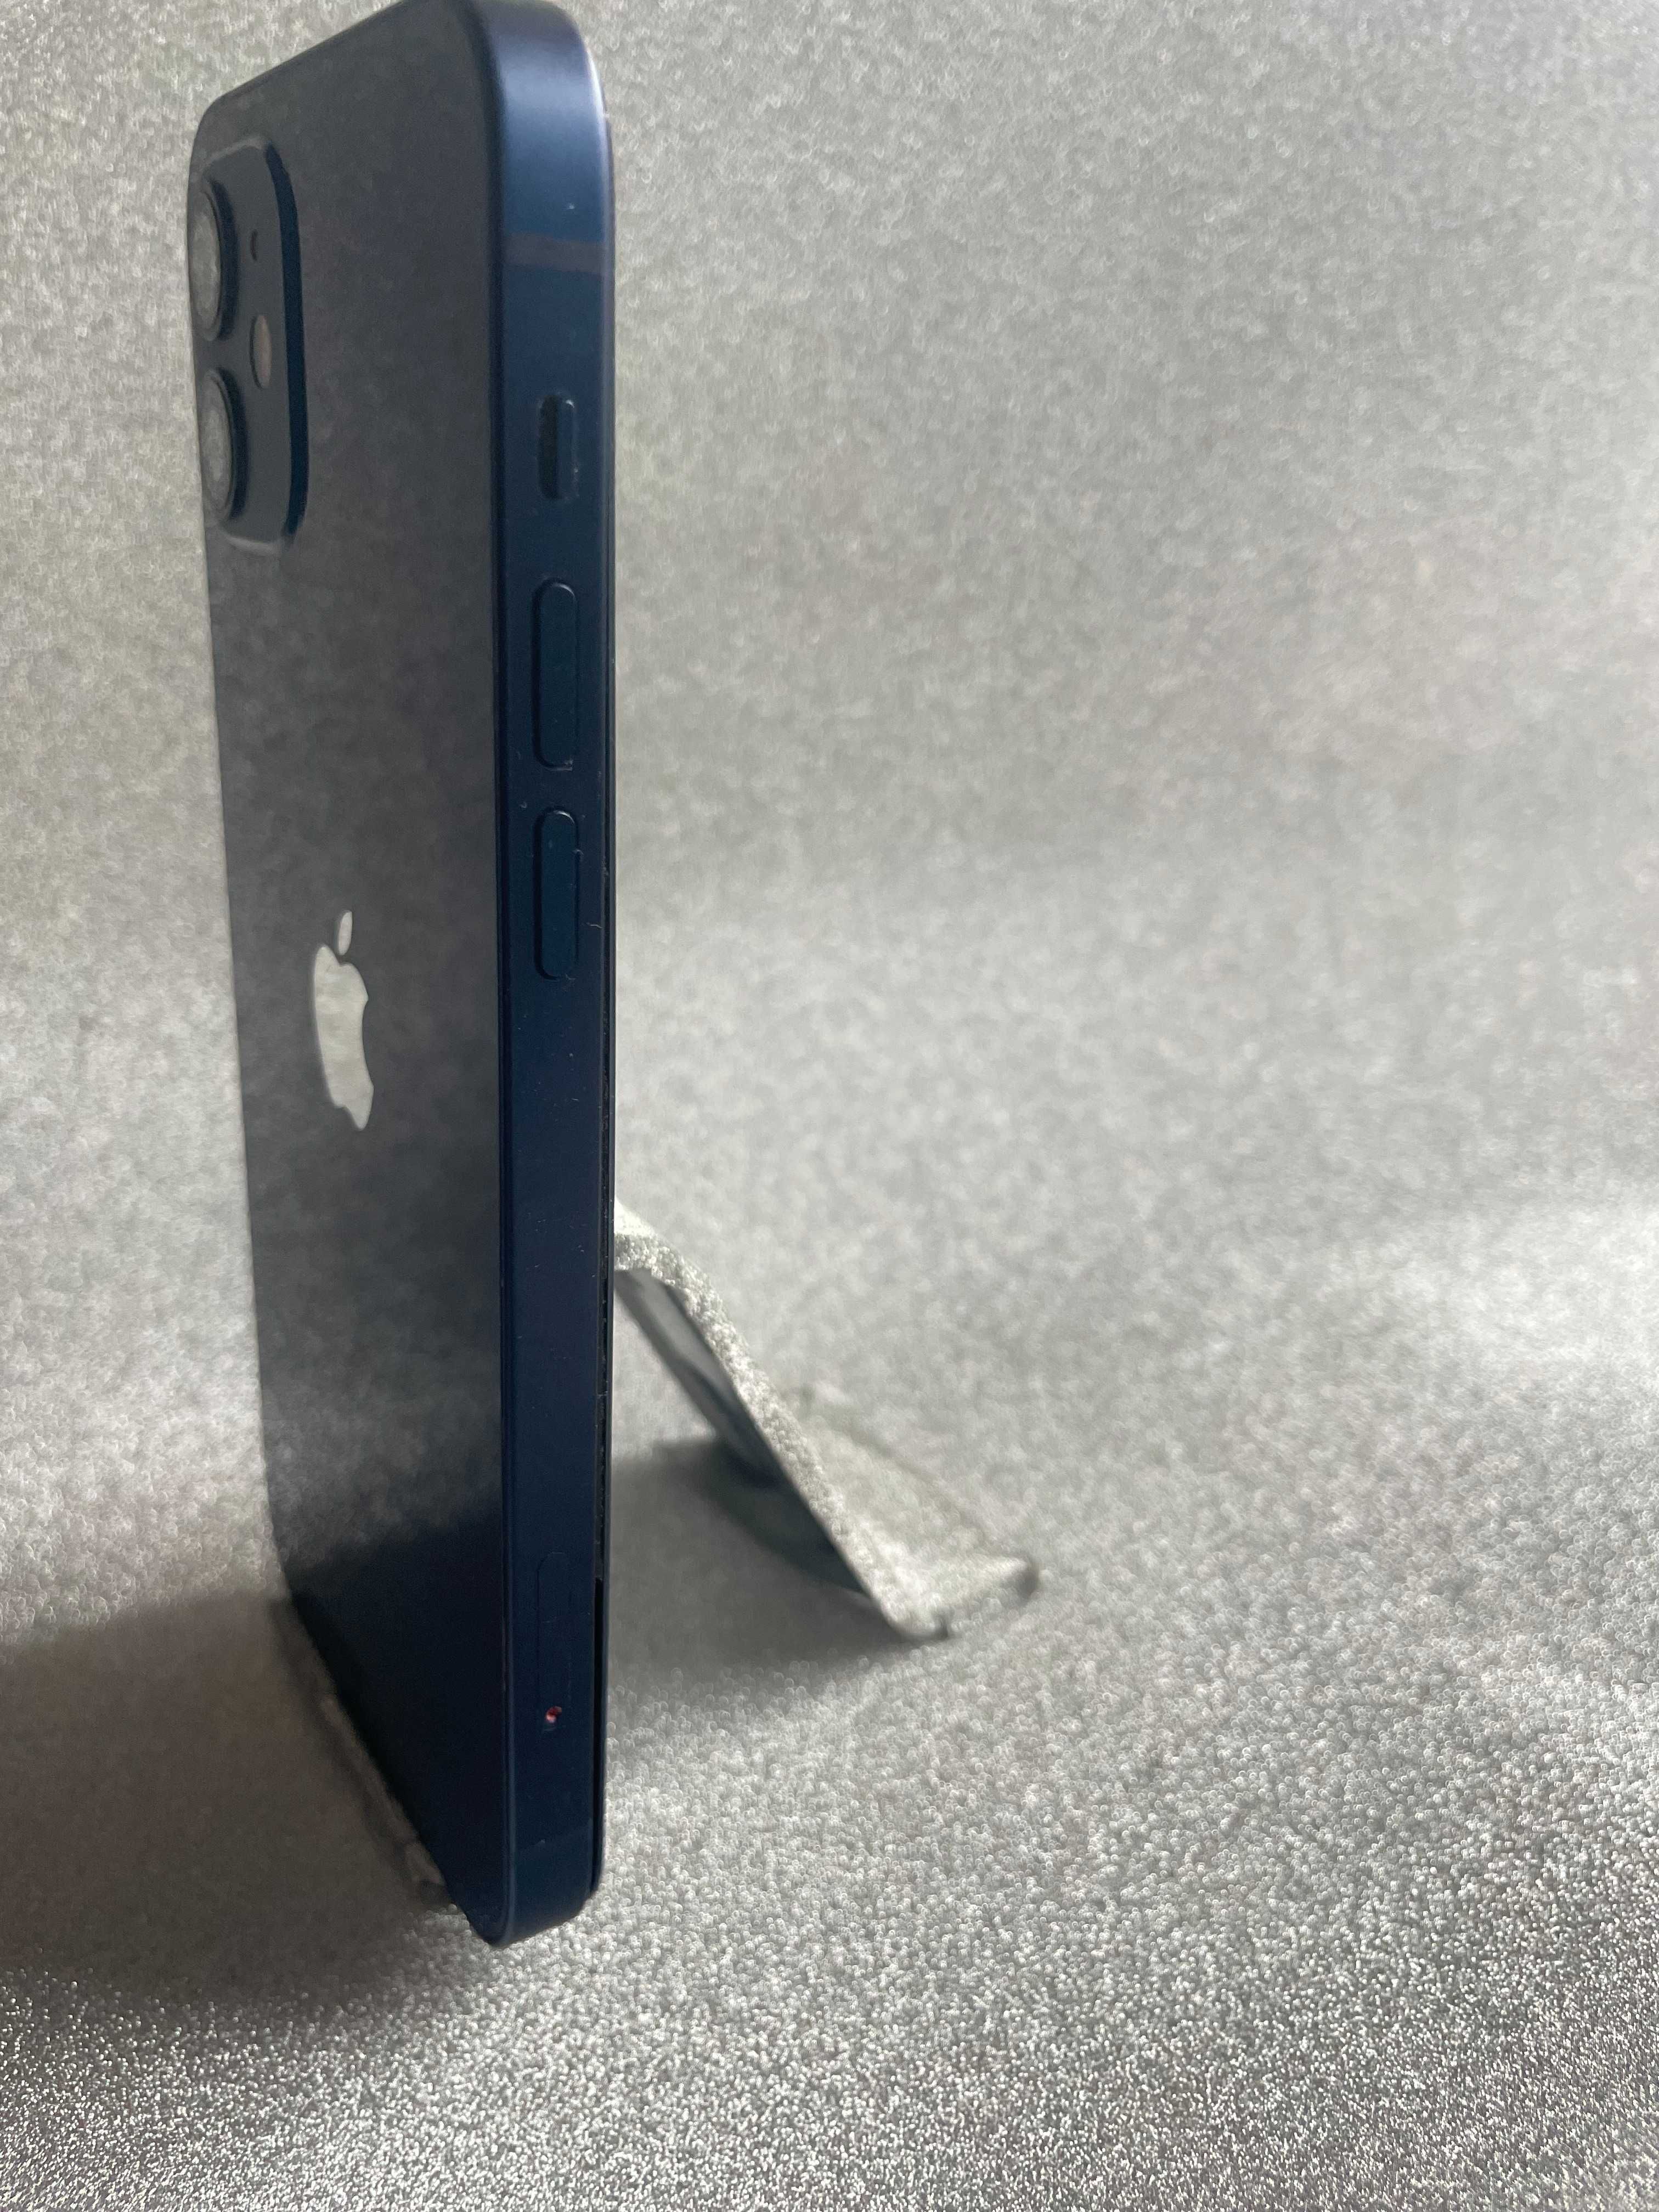 Apple iPhone 12 blue iCloud